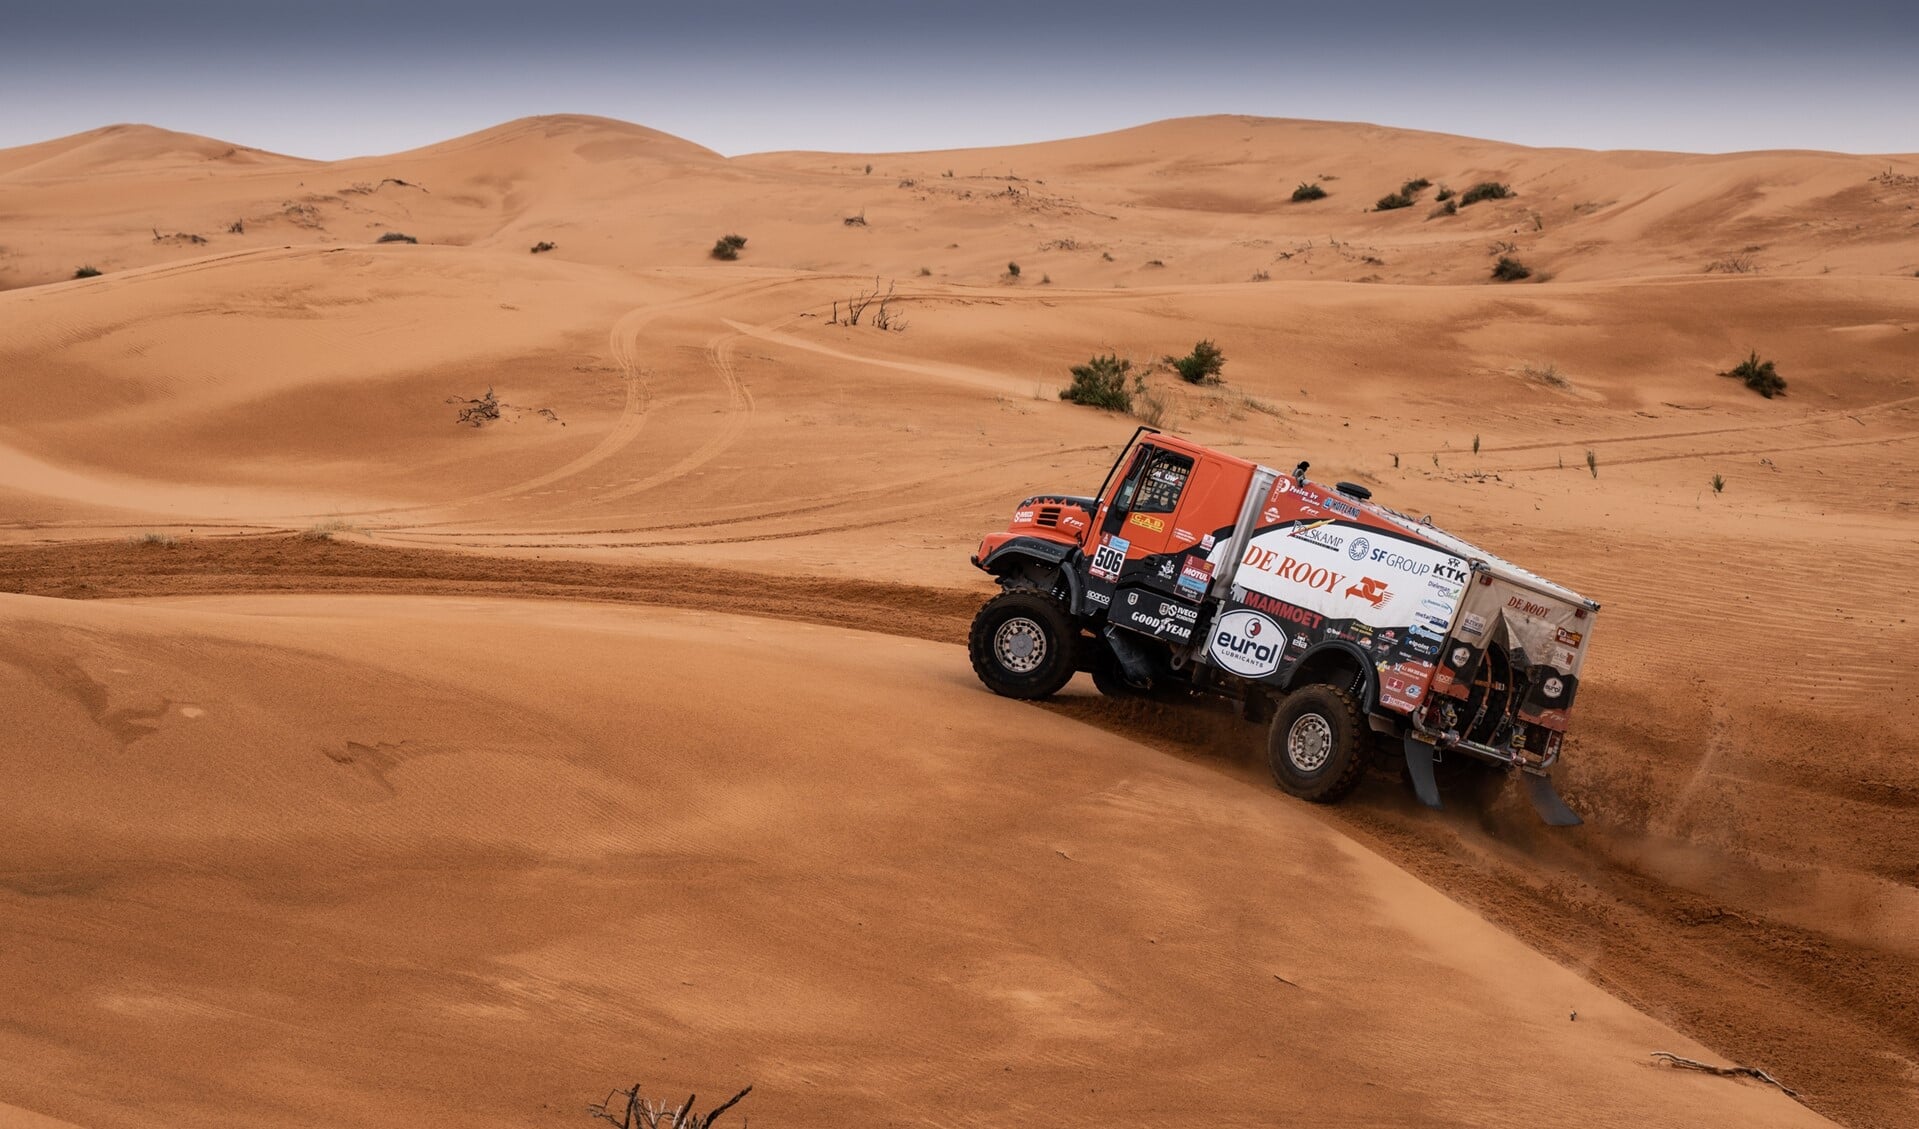 Martin van den Brink is dankzij een constant optreden in de Dakar Rally zevende na vijf etappes.